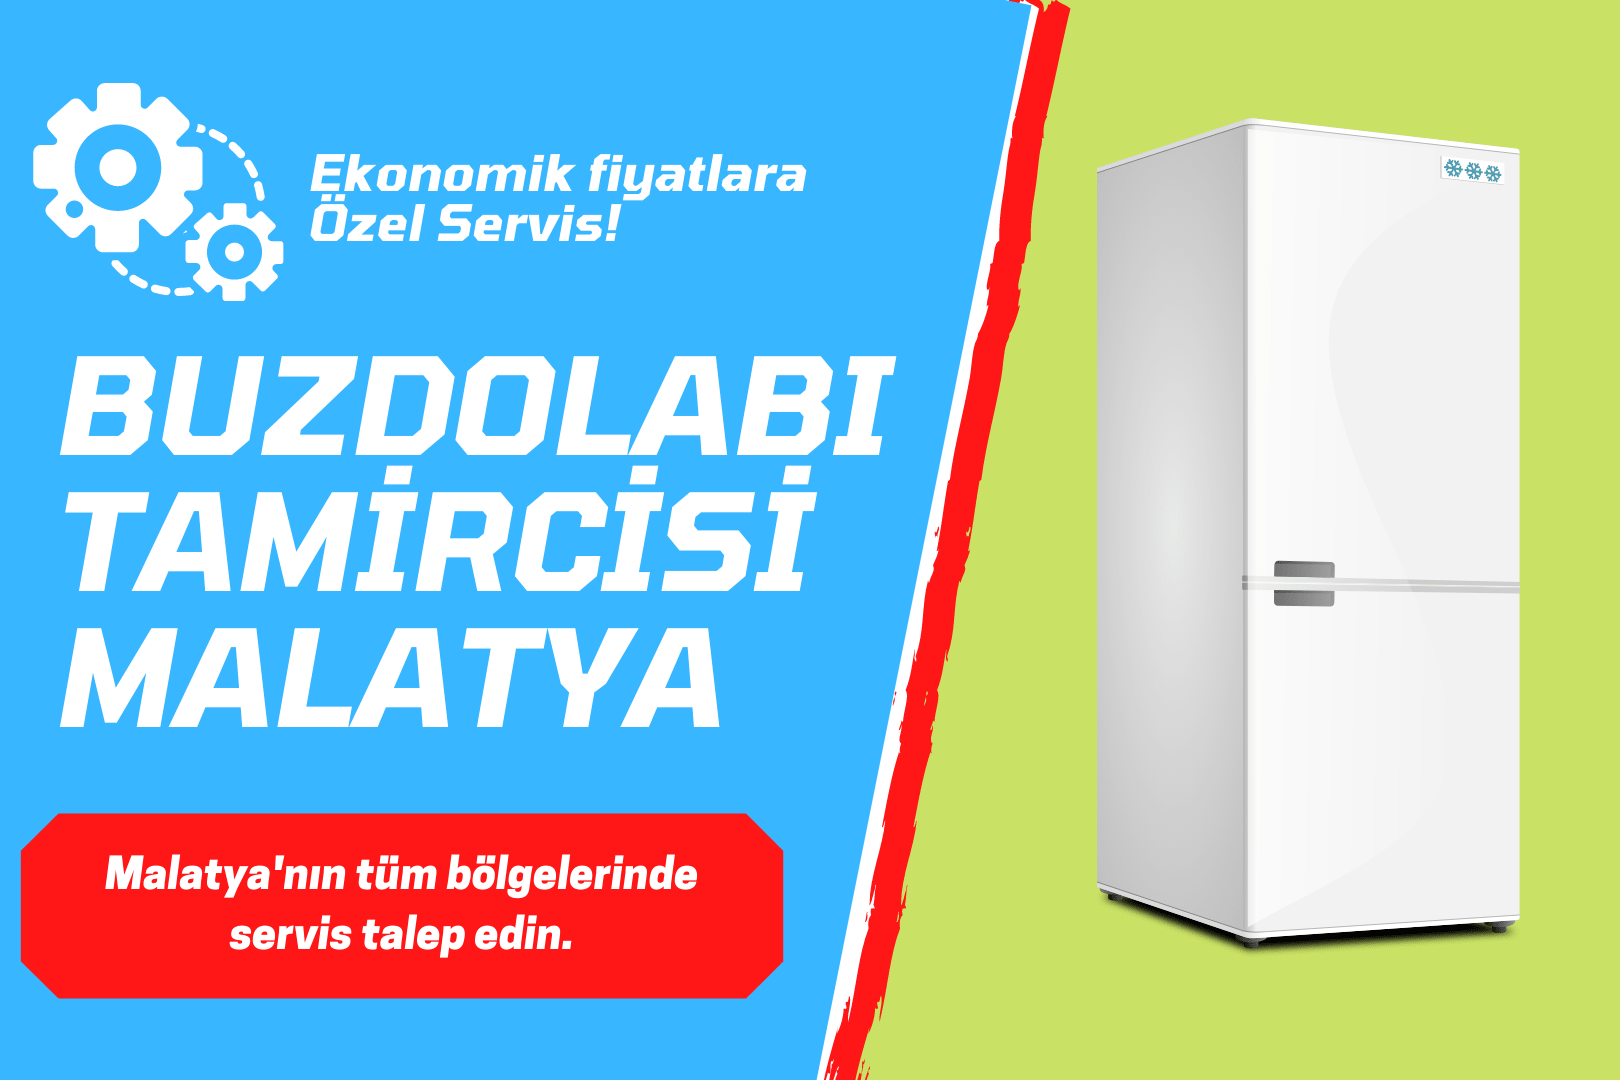 Malatya'da Buzdolabı Servisi